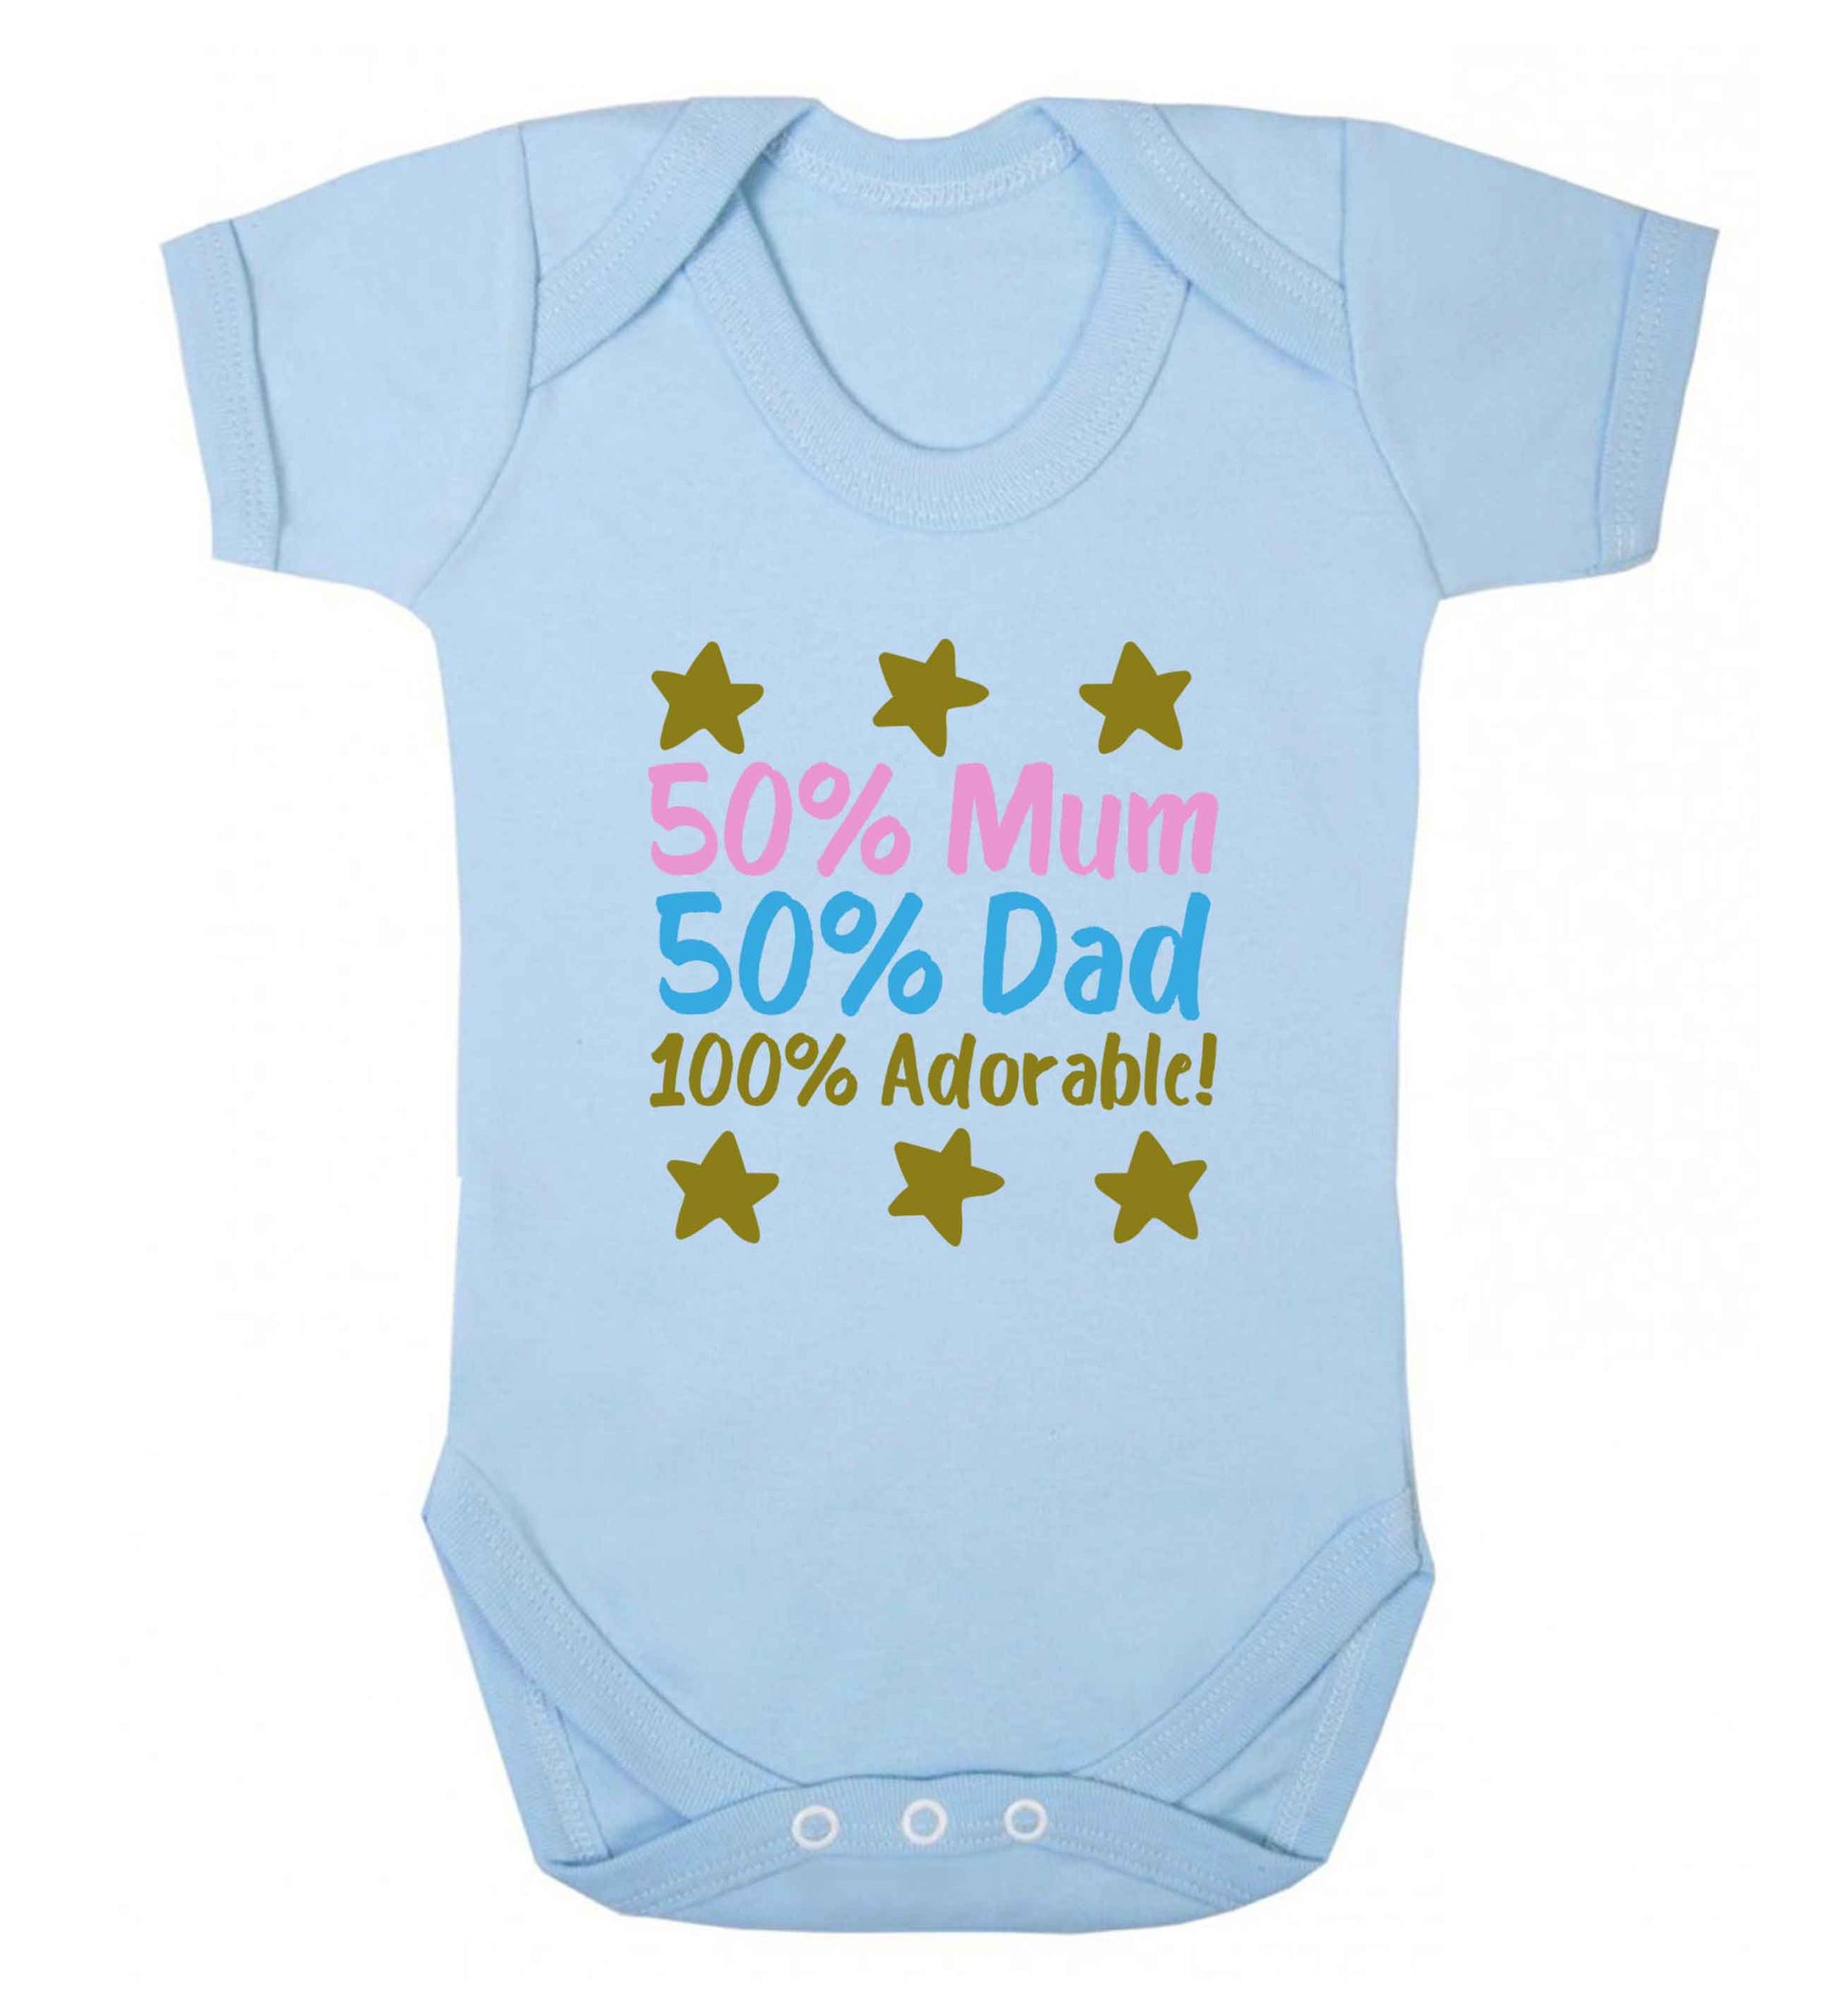 50% mum 50% dad 100% adorable baby vest pale blue 18-24 months